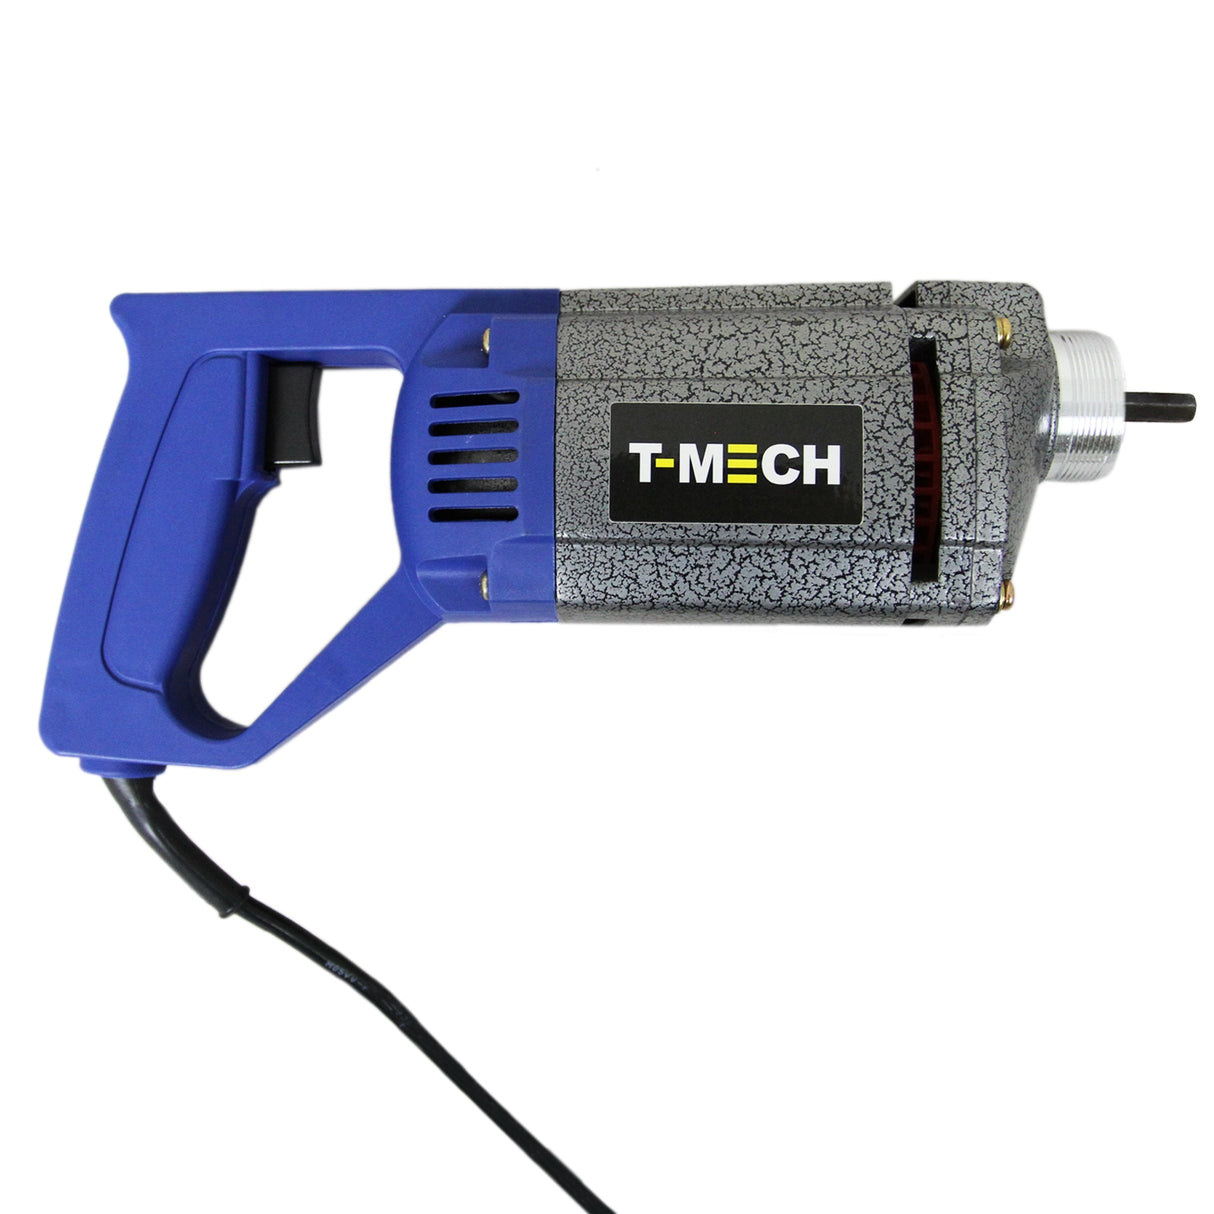 T-Mech Concrete Vibrator